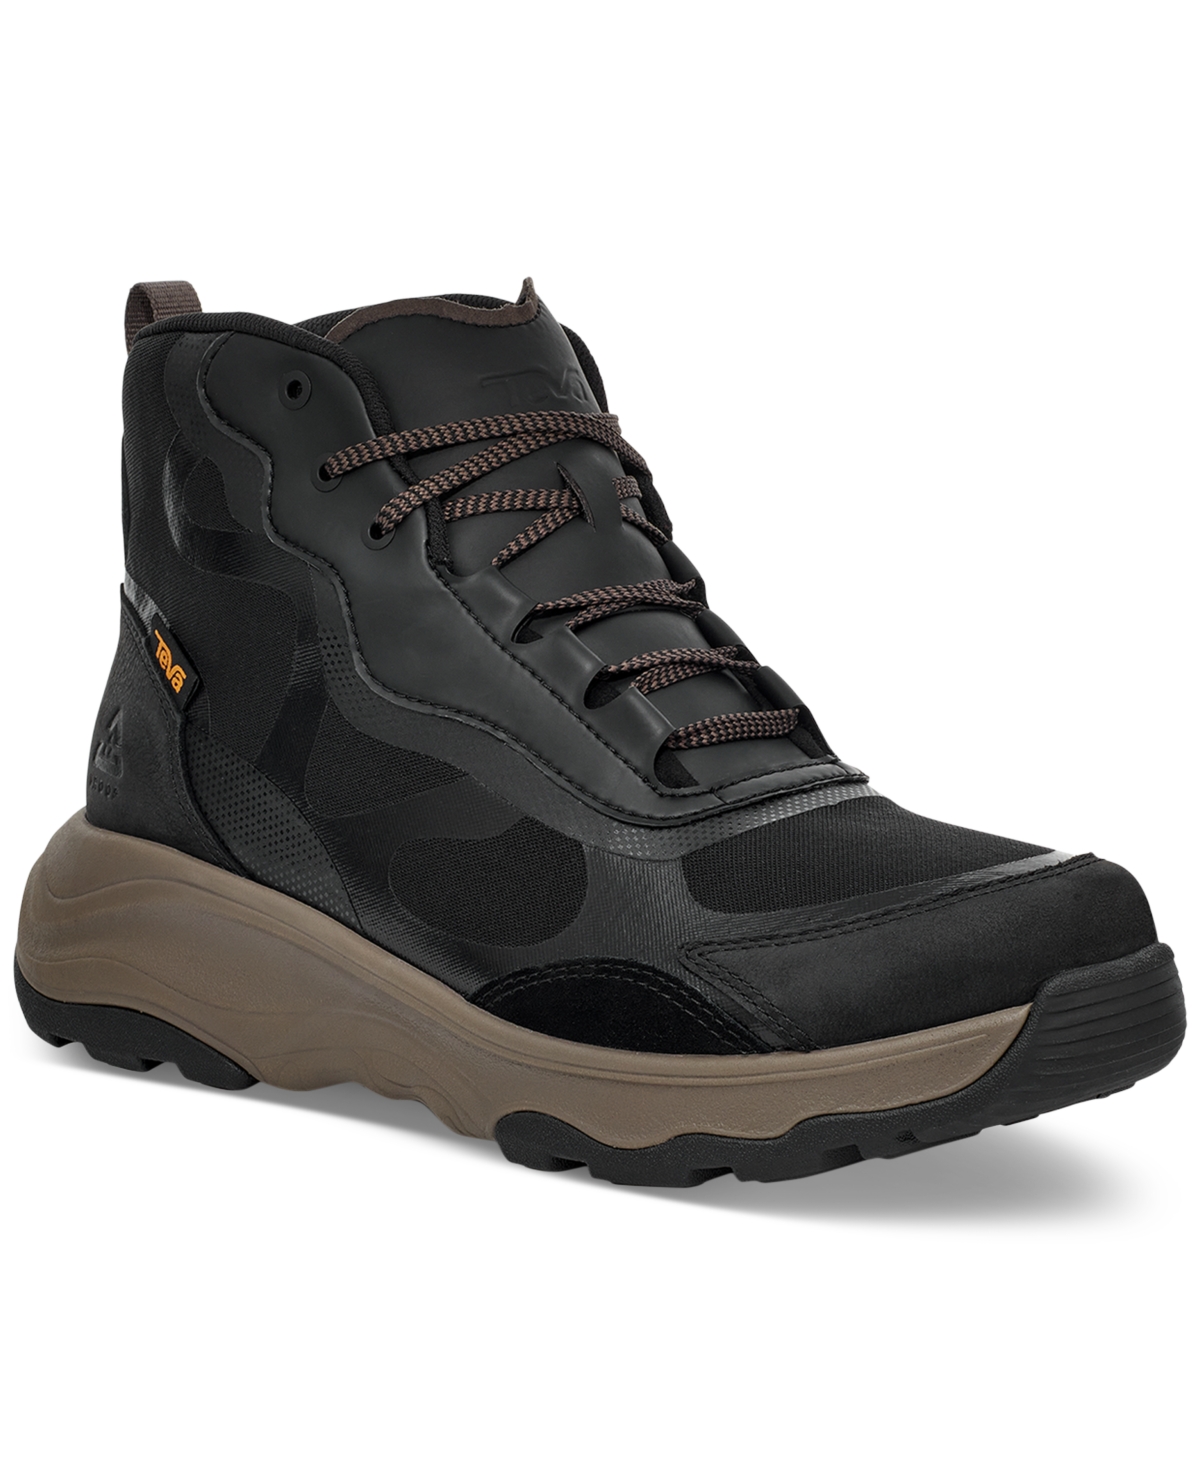 Men's Geotrecca Rapid Proof Repel Boot - Black/ Grey